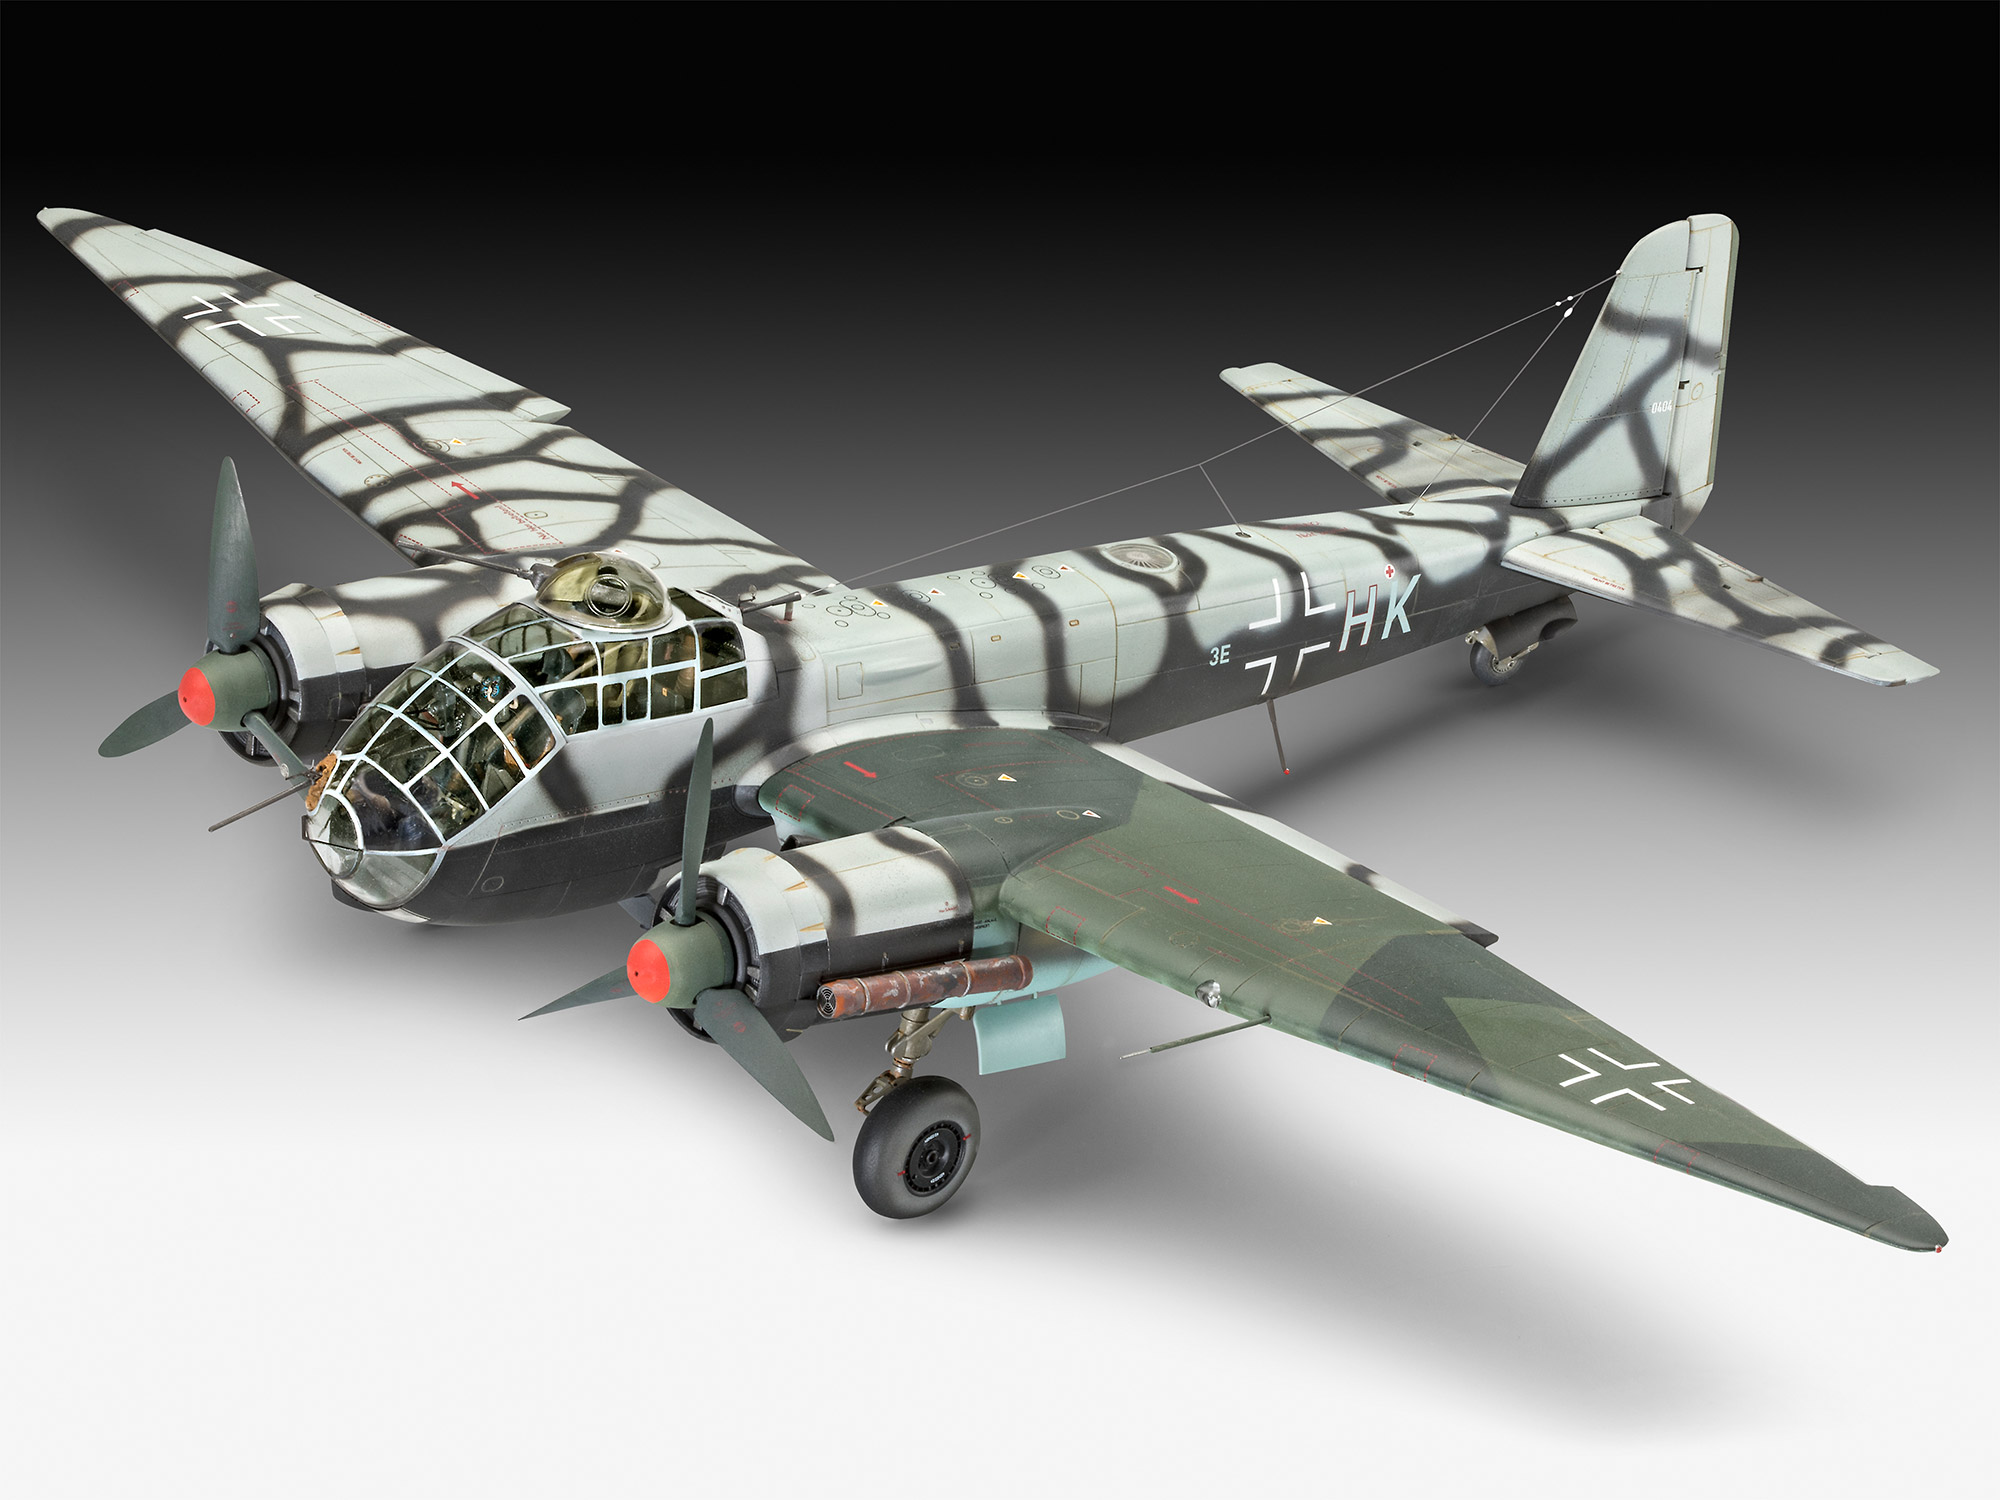 1/48　ユンカース Ju188 A-1 レイヒャー - ウインドウを閉じる